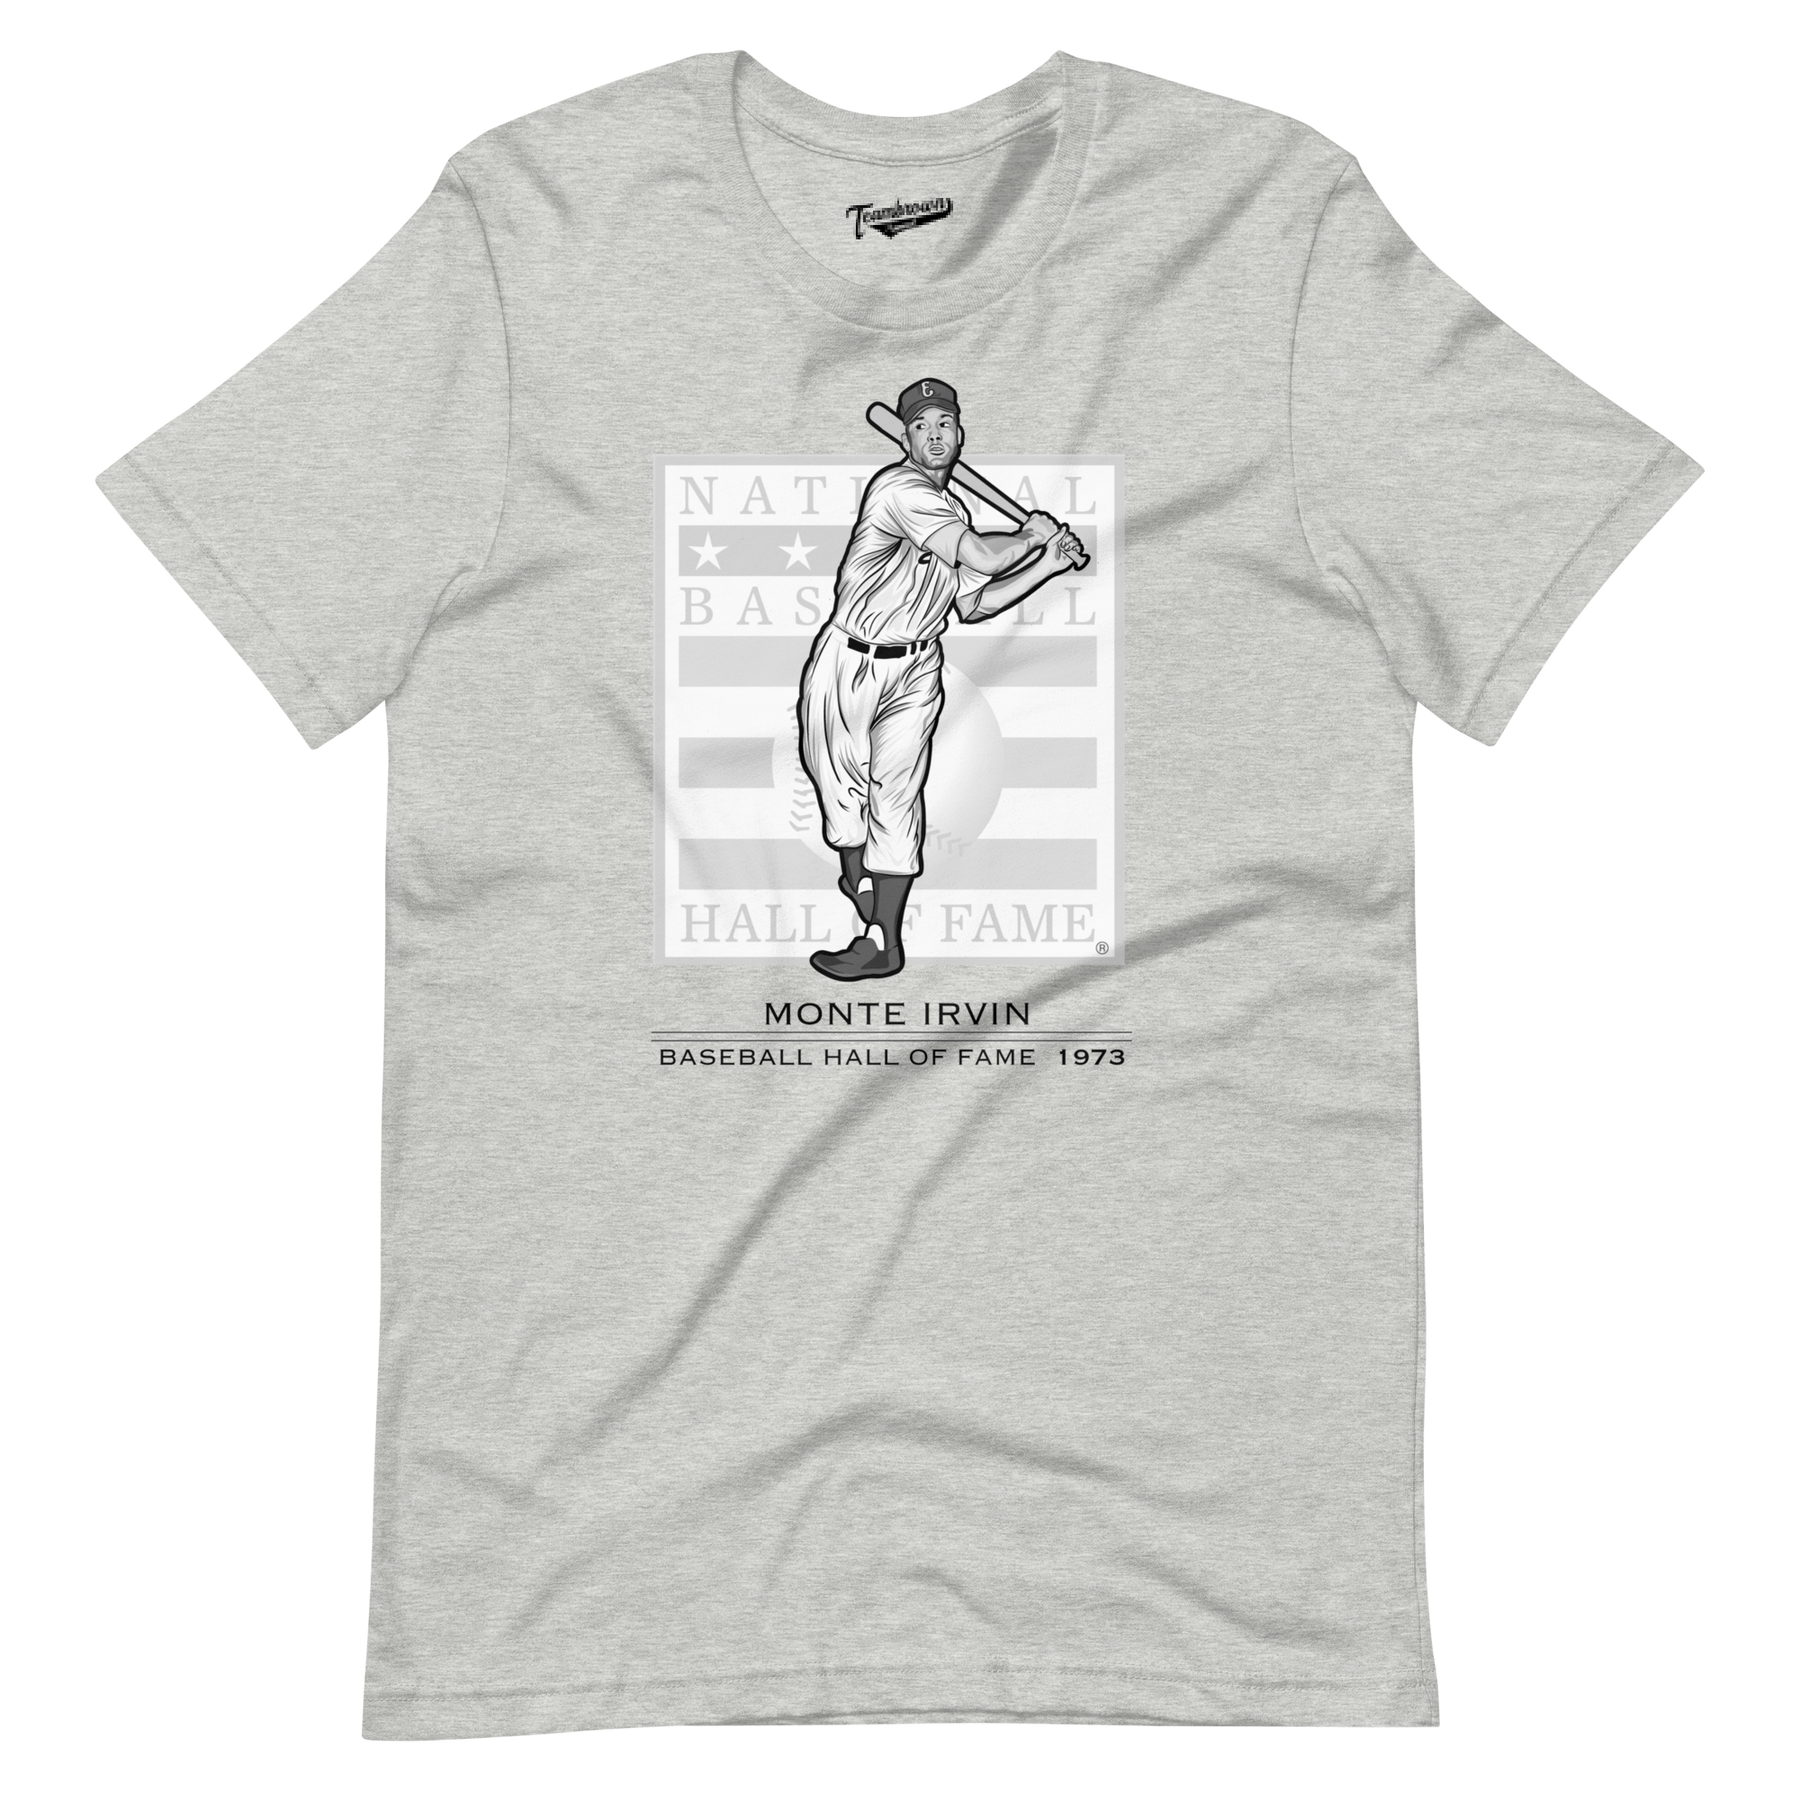 New York Yankees Personalized Baseball Jersey Shirt 137